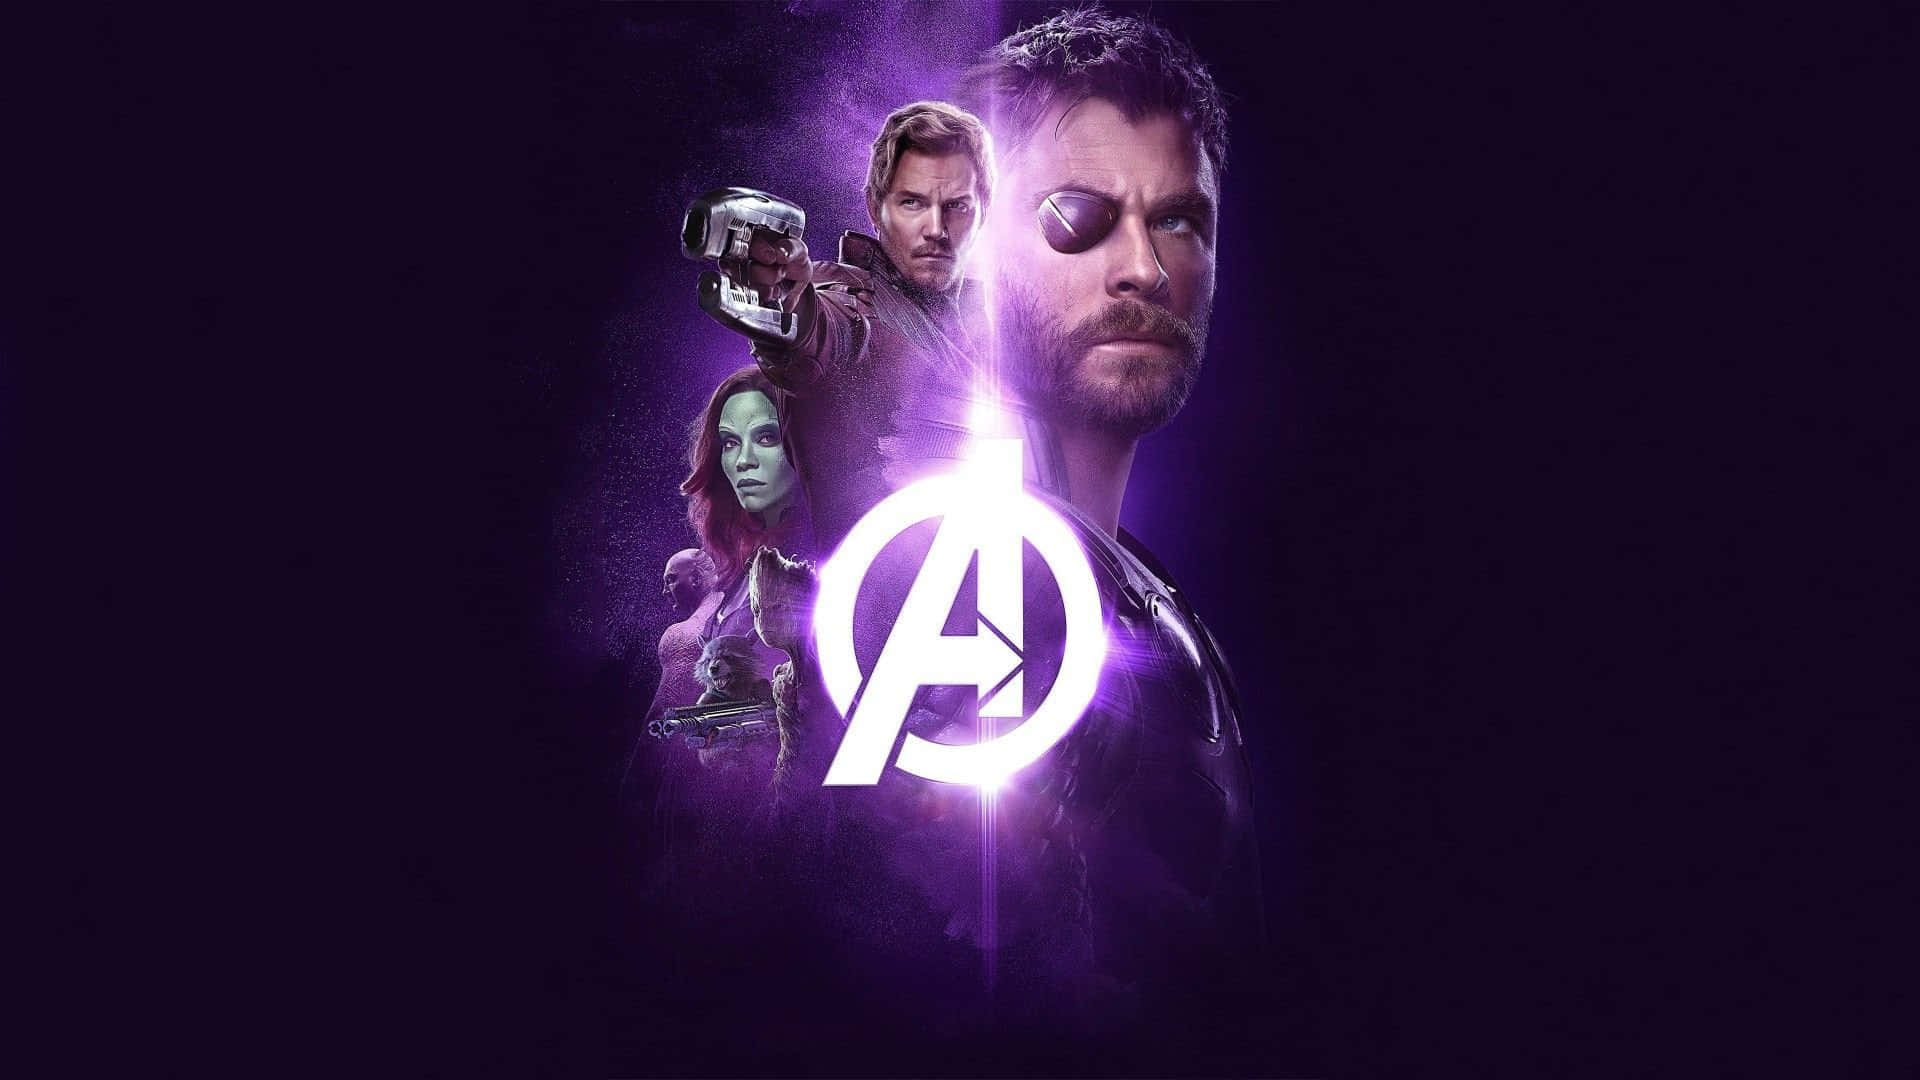 Avengershintergrund Oder Avengers Hintergrundbild.